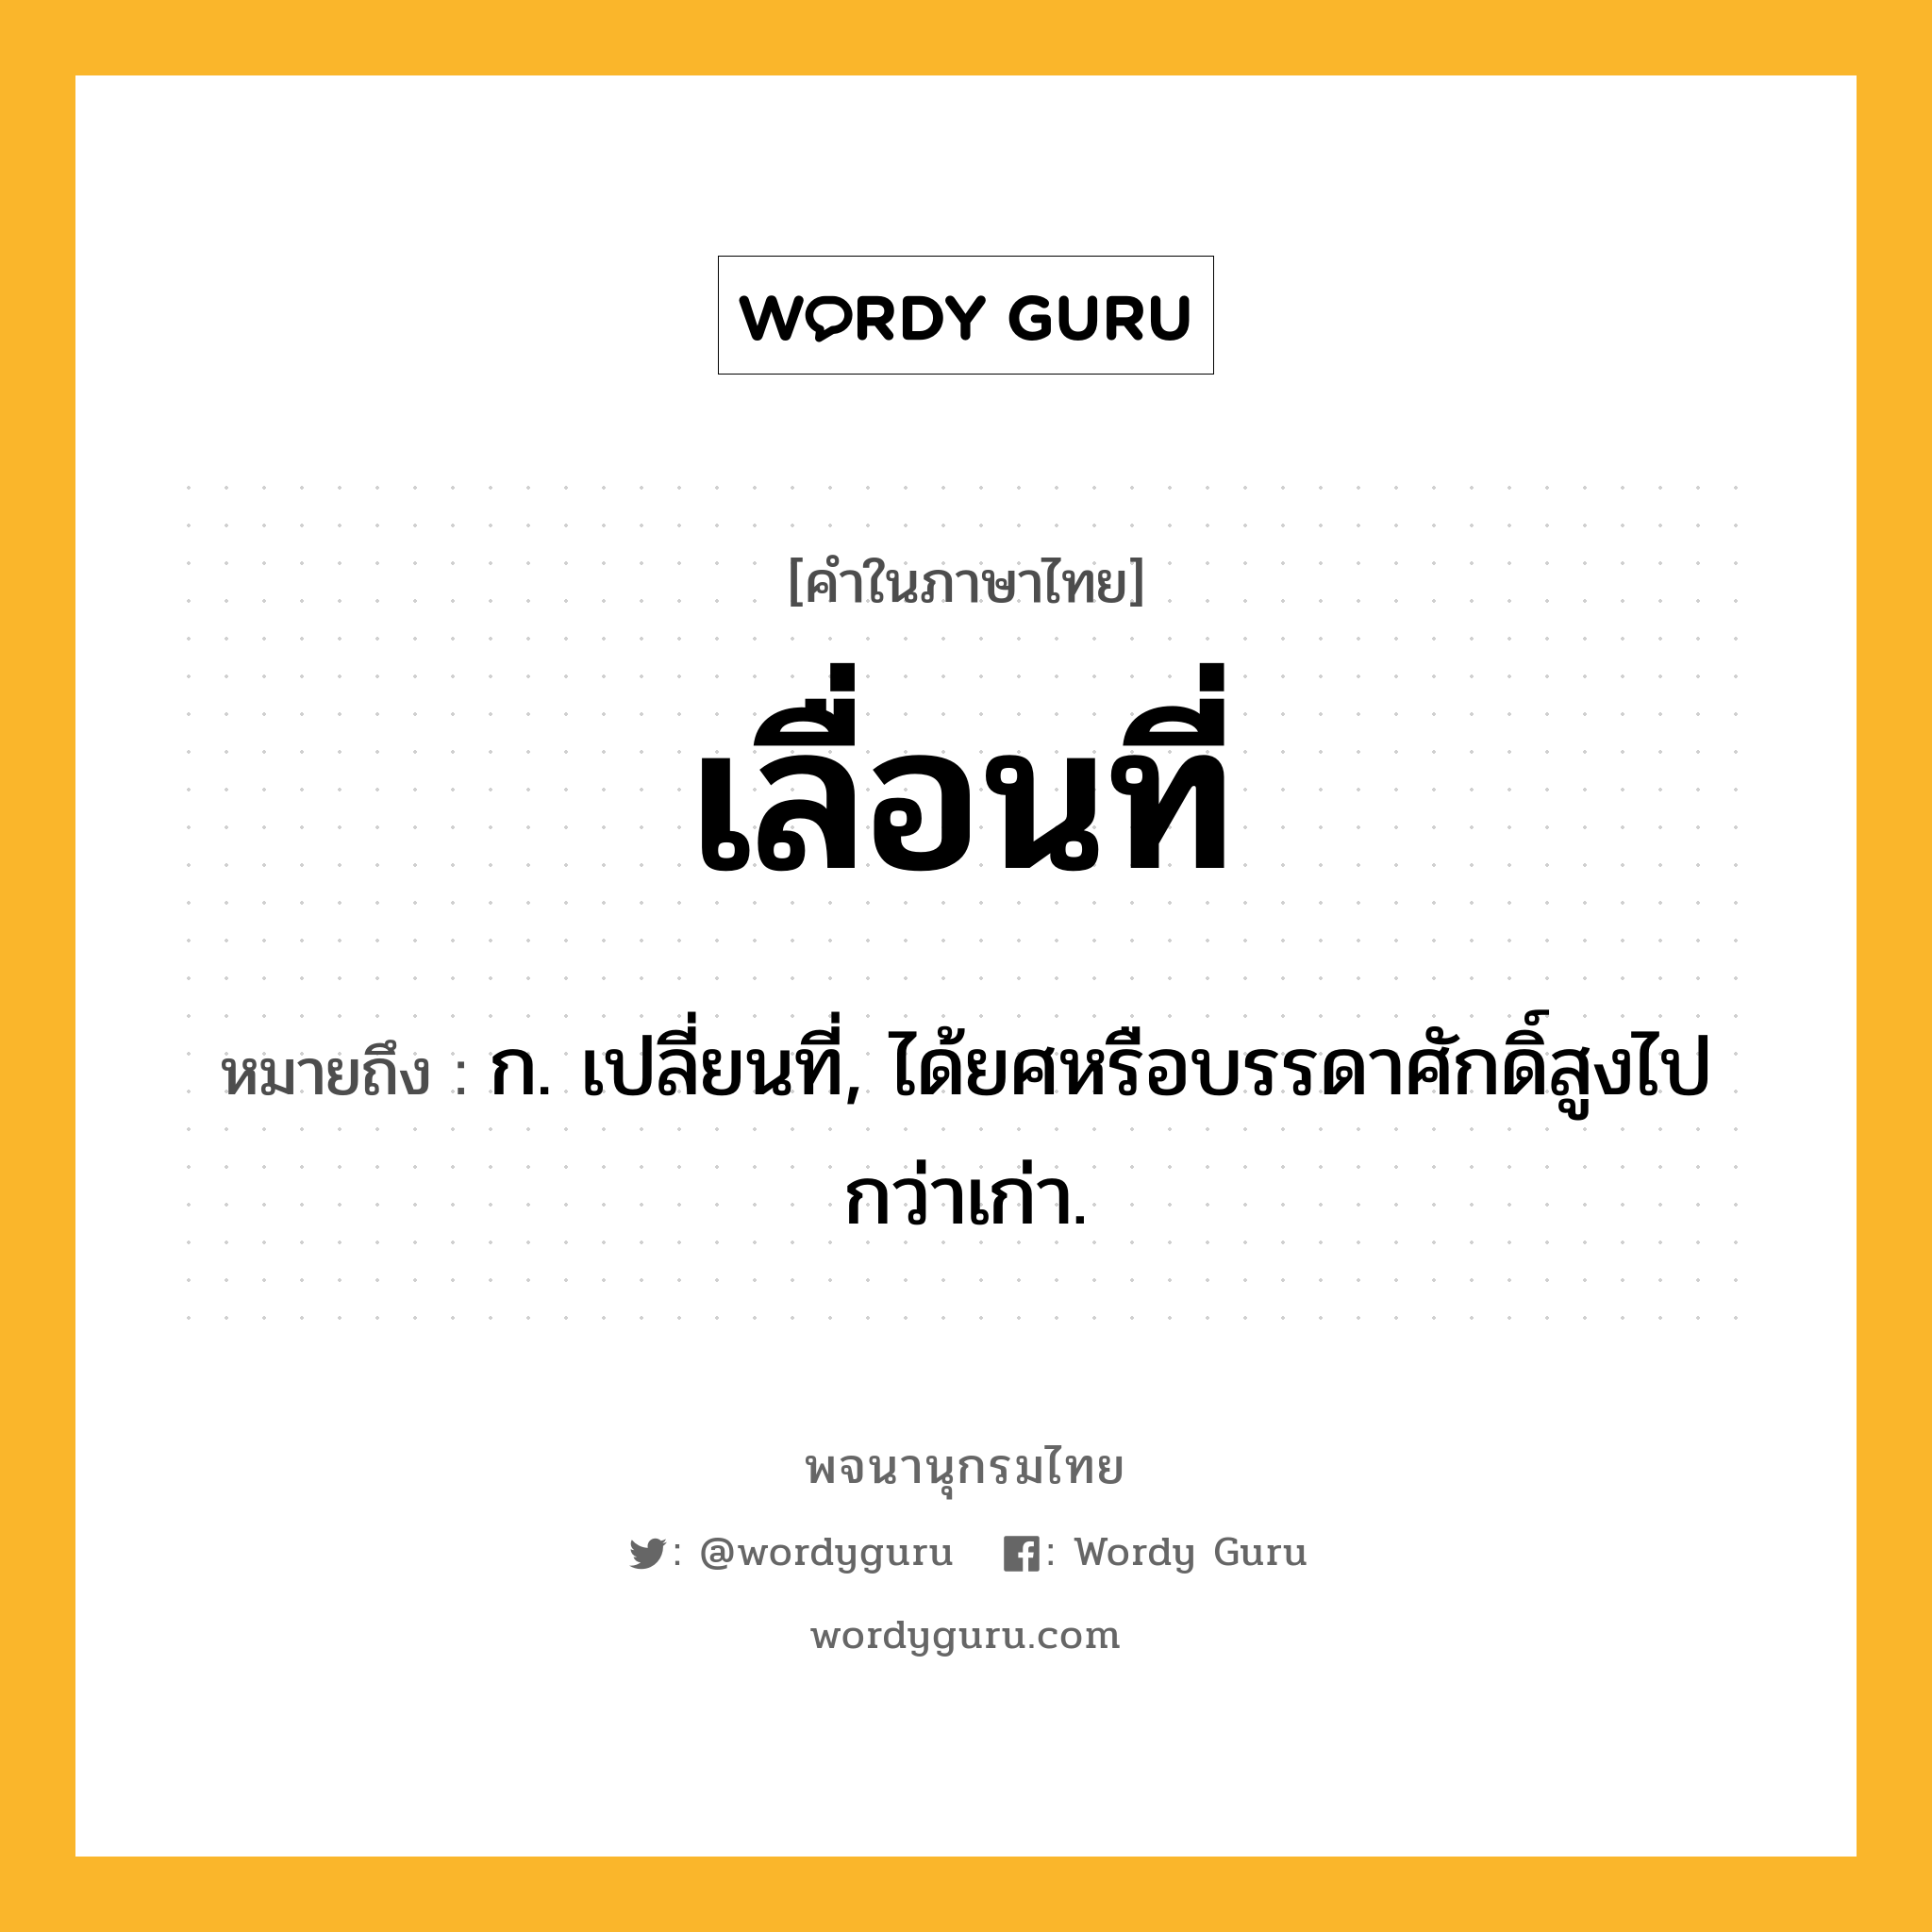 เลื่อนที่ หมายถึงอะไร?, คำในภาษาไทย เลื่อนที่ หมายถึง ก. เปลี่ยนที่, ได้ยศหรือบรรดาศักดิ์สูงไปกว่าเก่า.